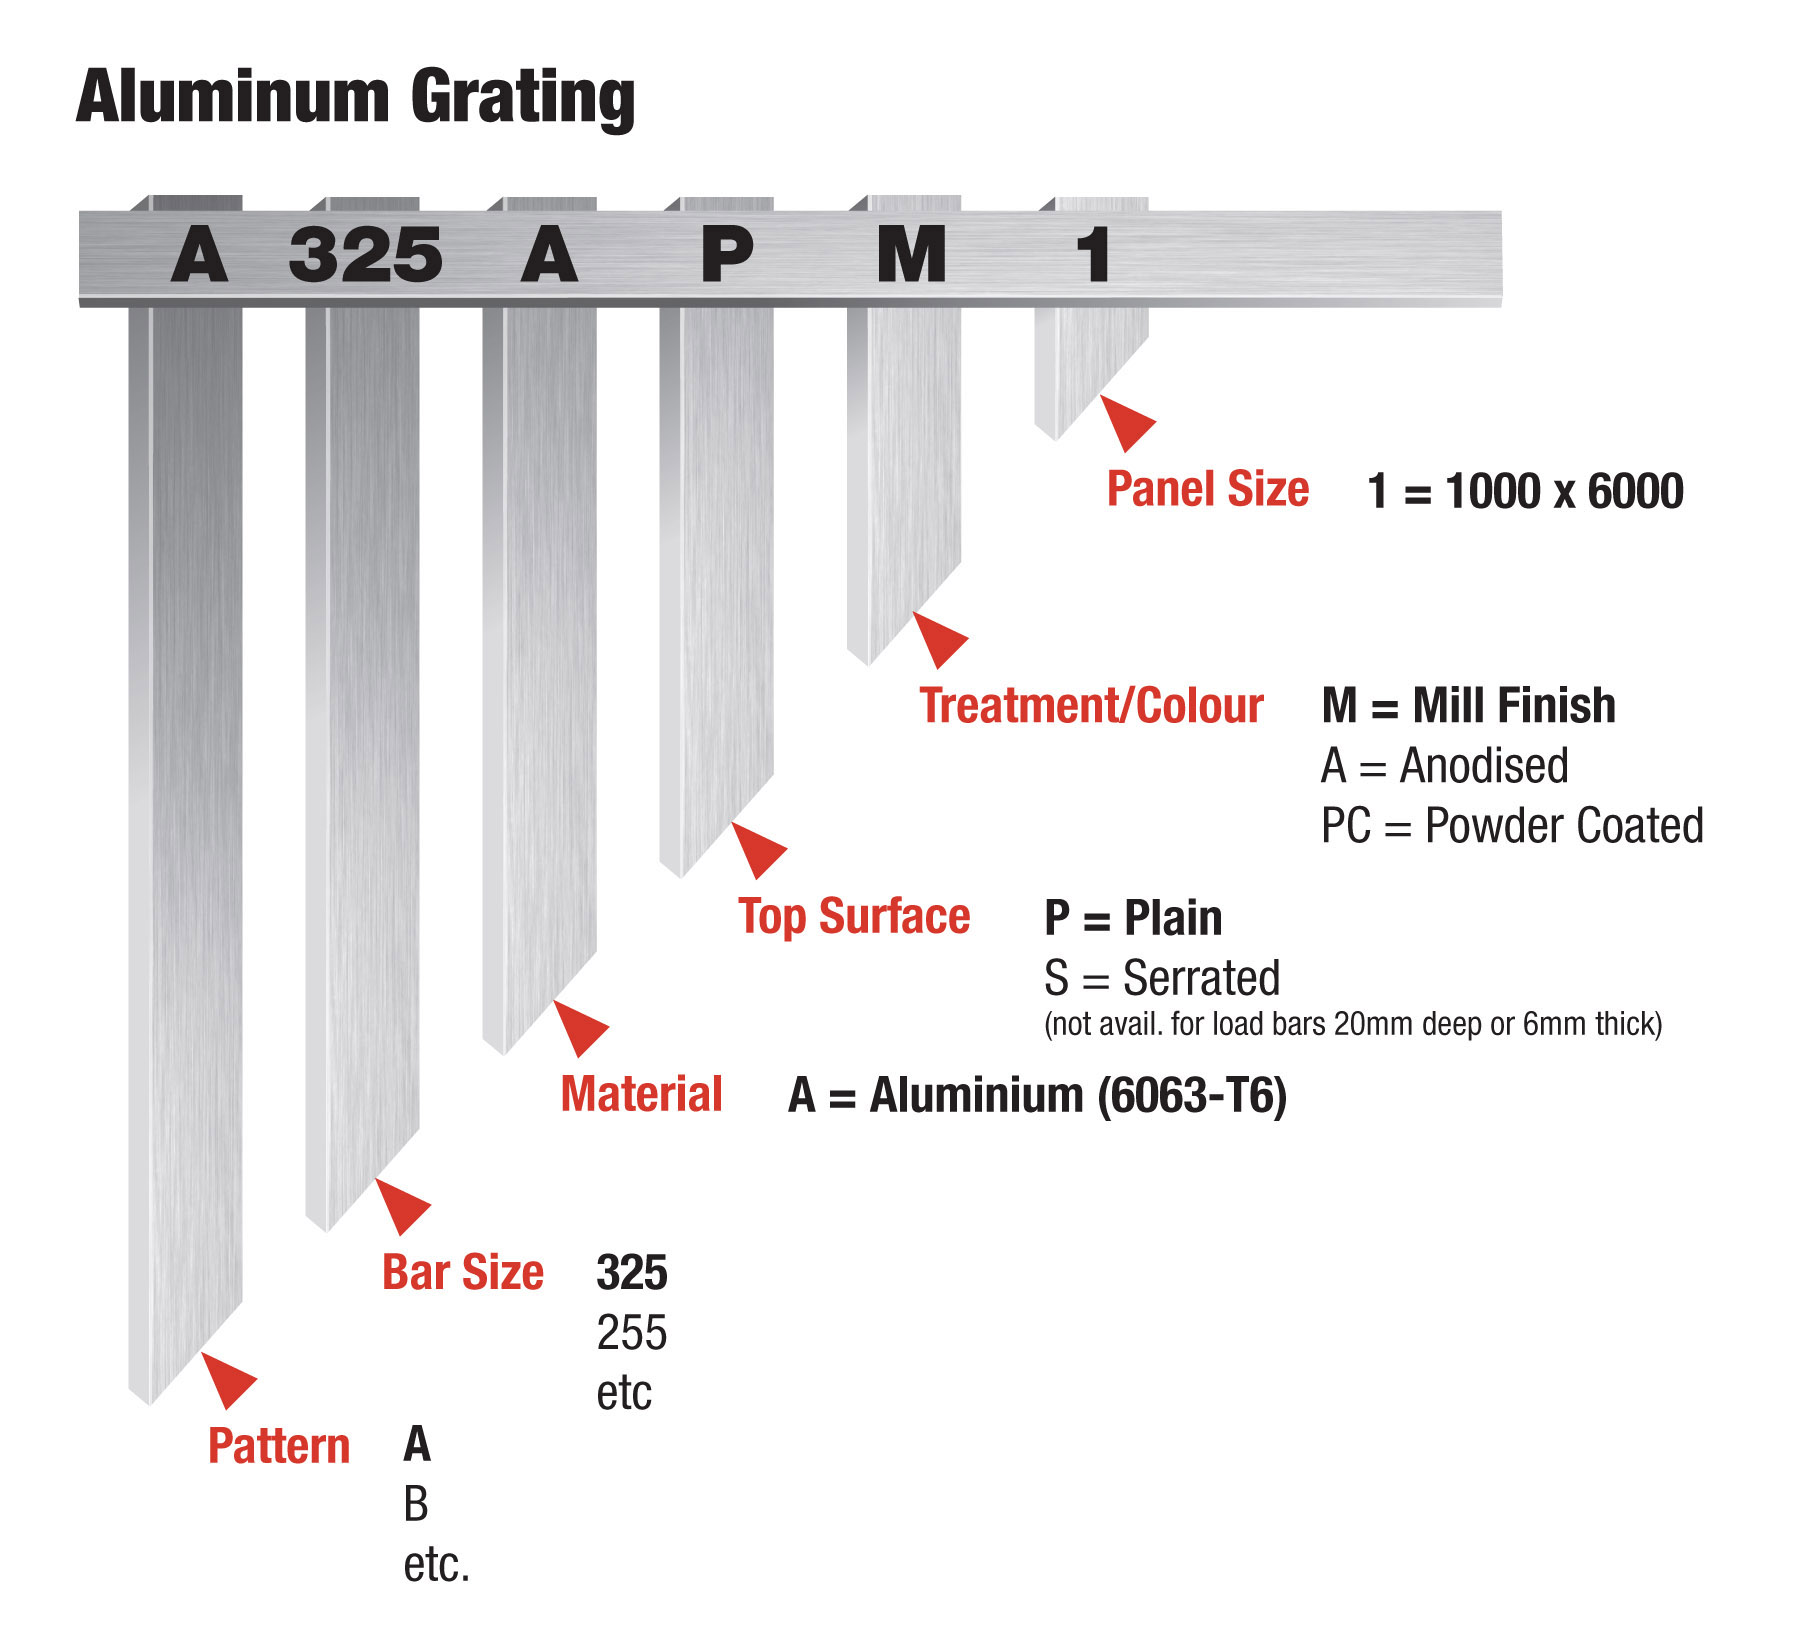 Aluminium grating part numbers